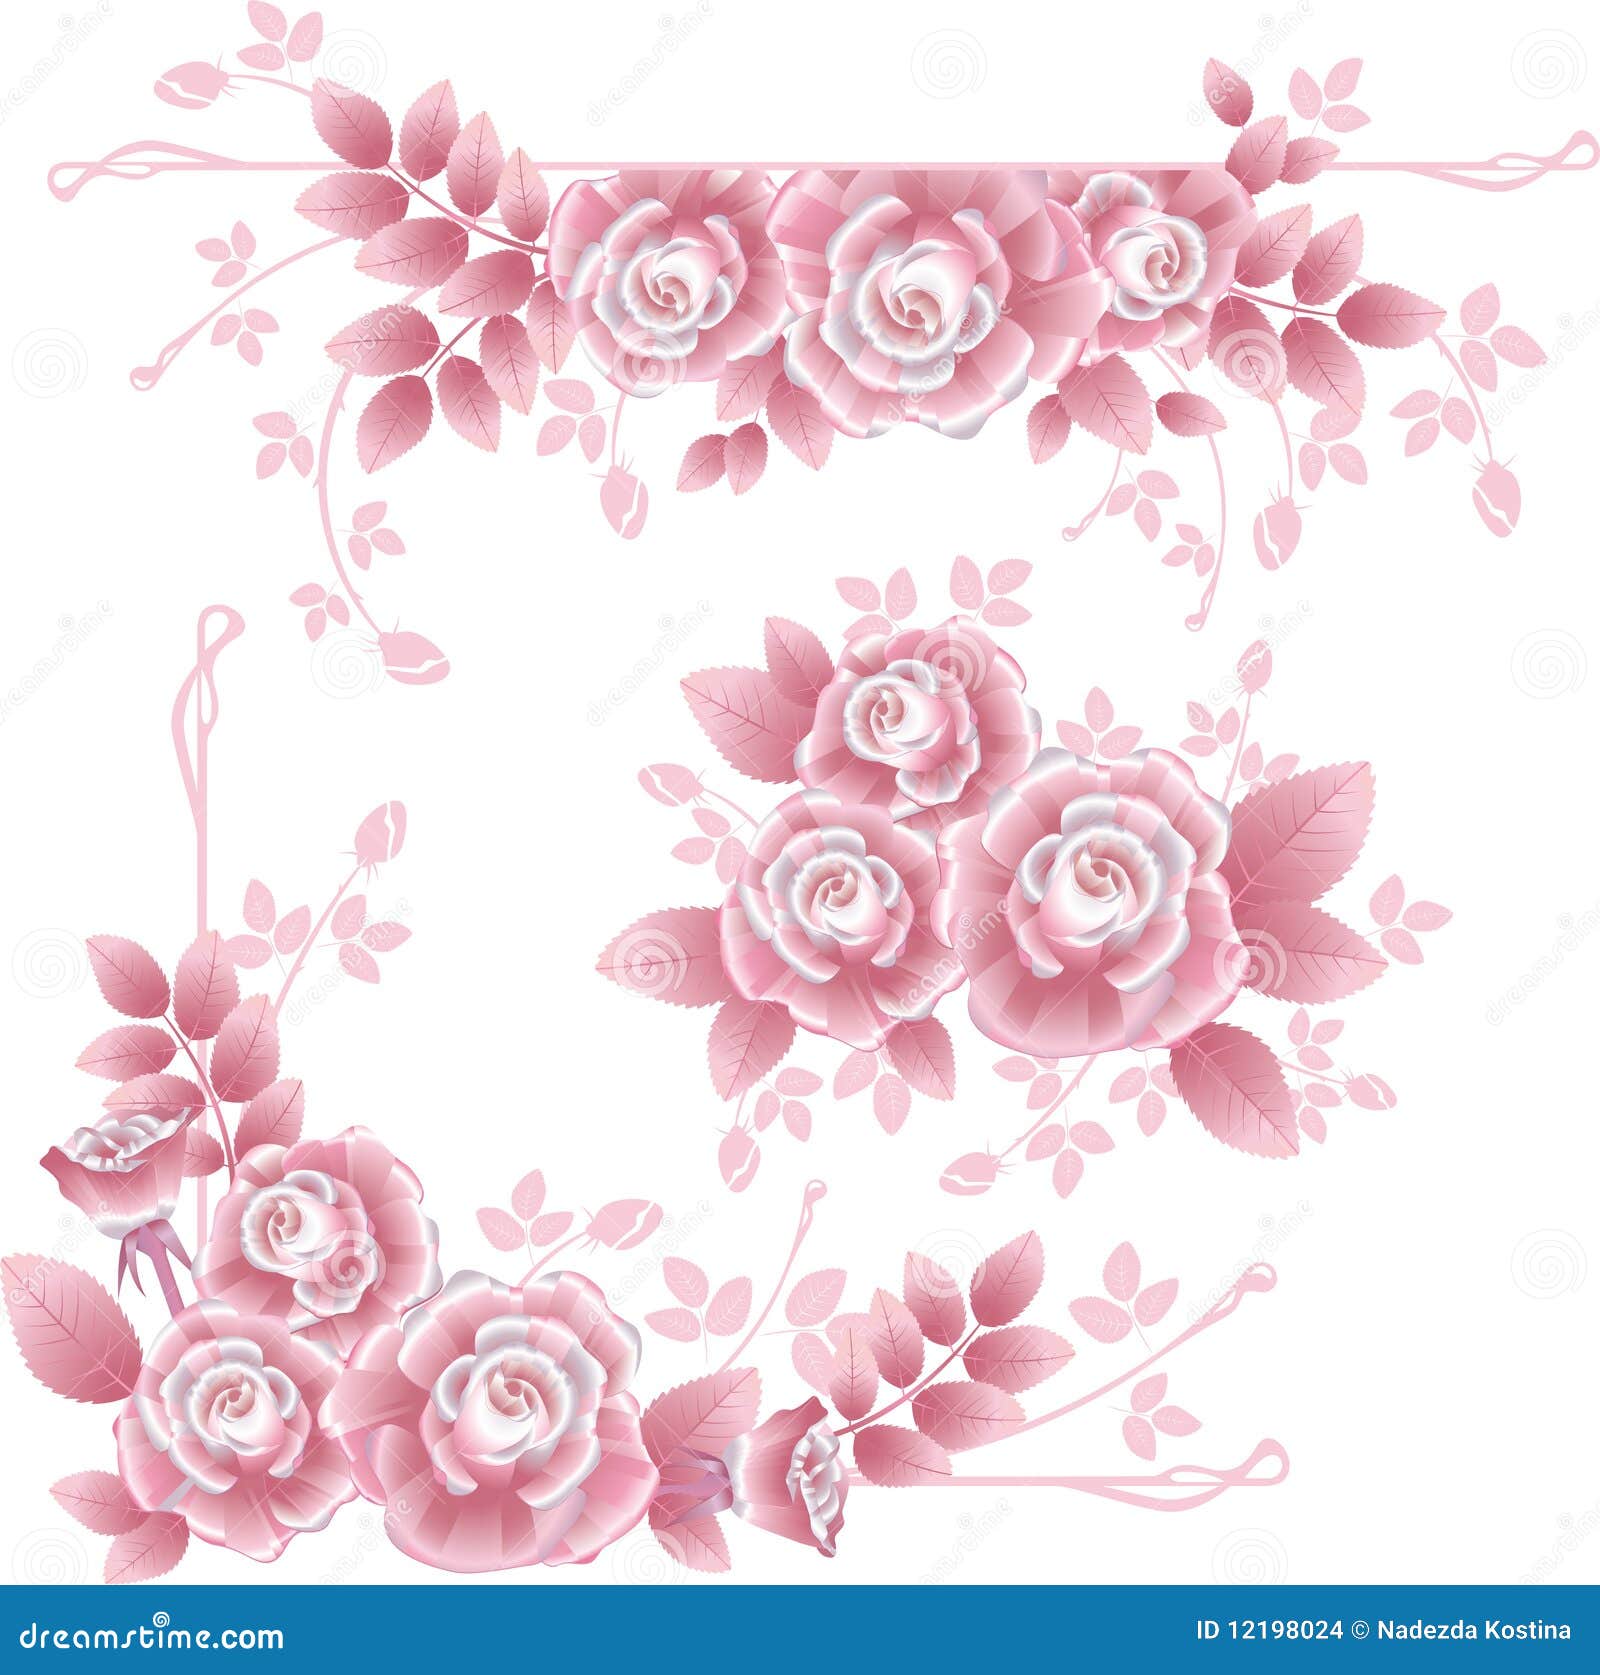 Set unterschiedliche Auslegungelemente mit rosafarbenen seidigen Rosen. Ecken-, zentrale und horizontaleauslegungelemente.